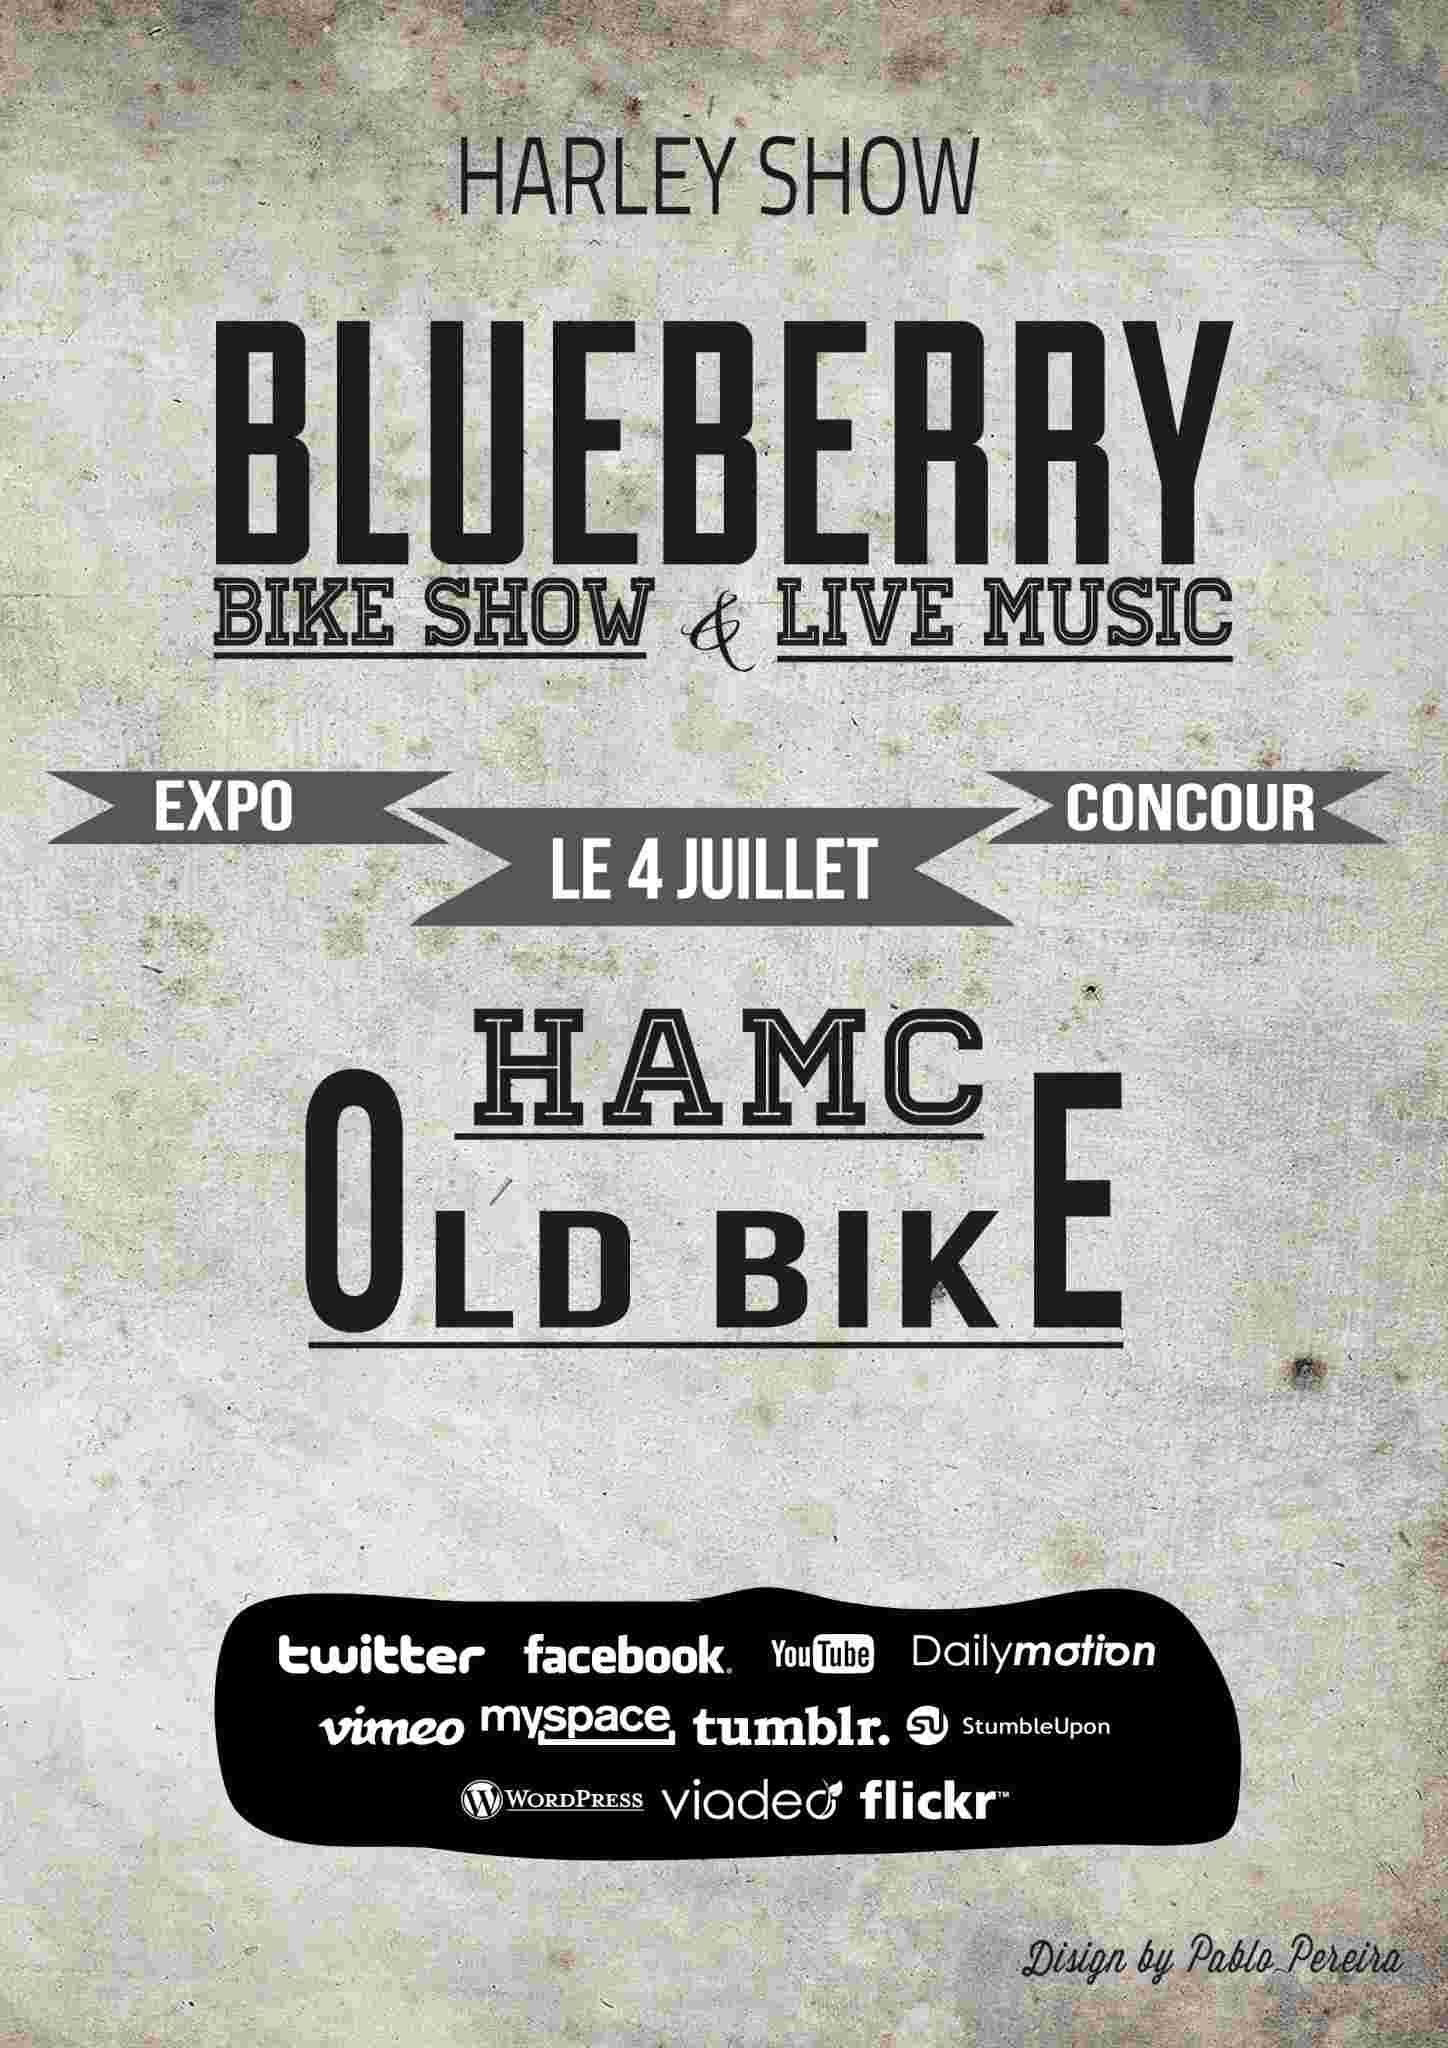 [Affiche] Festival de Harley le 4 juillet à Blueberry Affich10